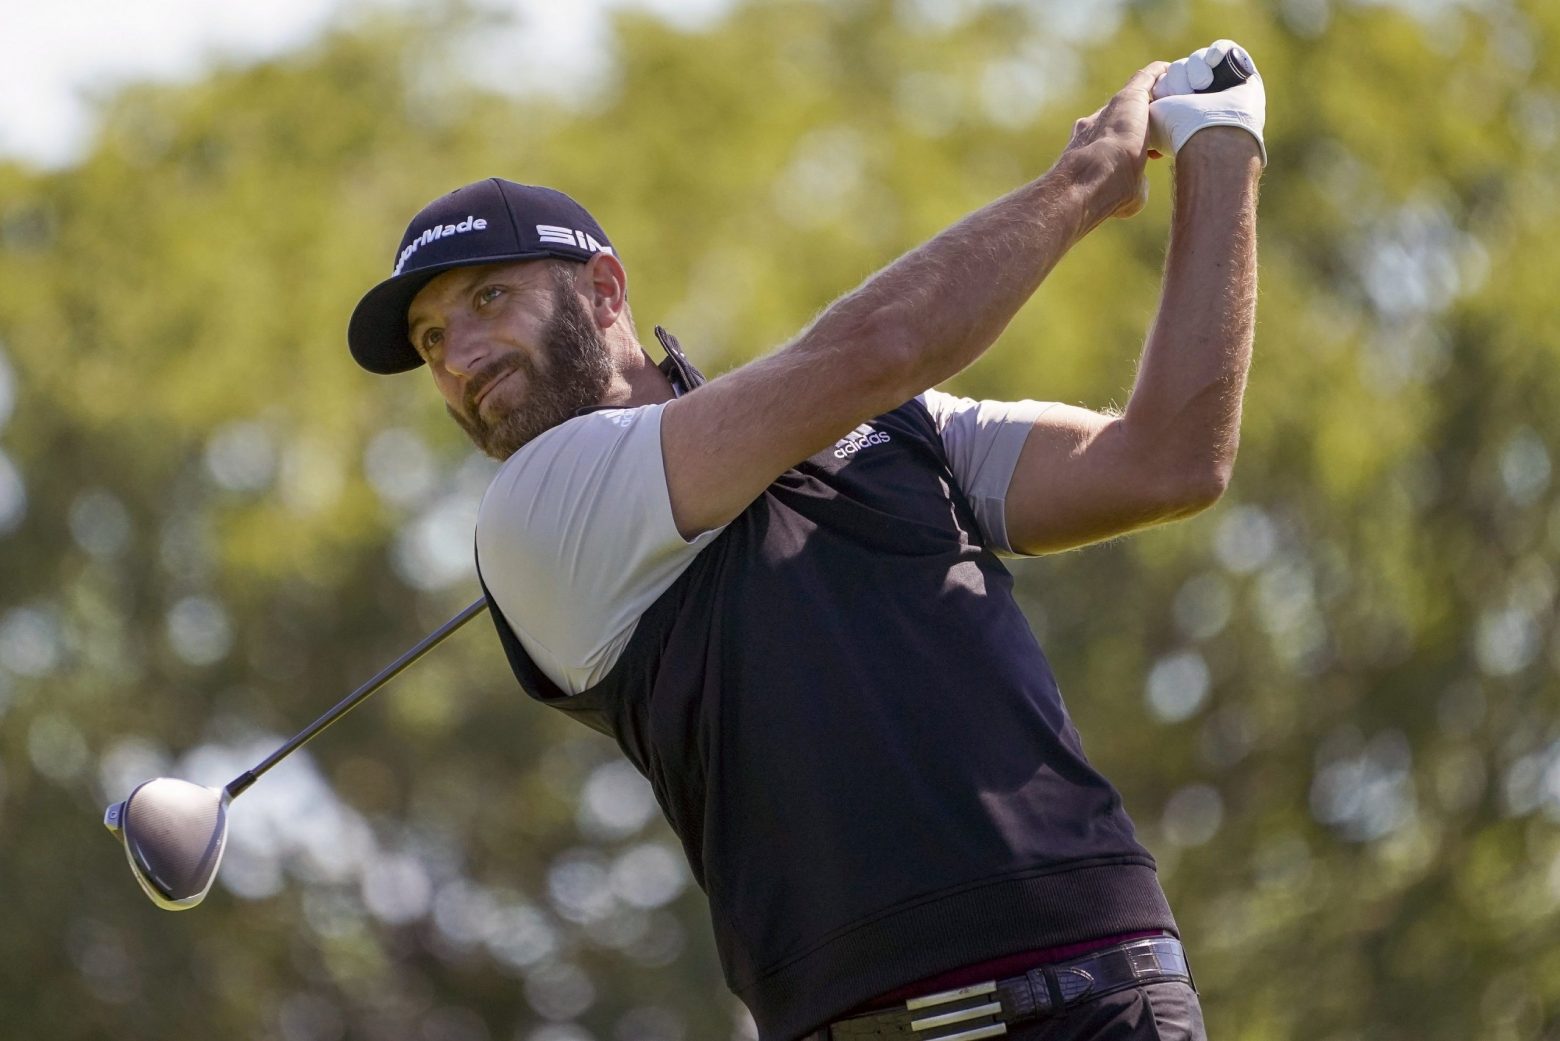 Golfer người Mỹ Dustin Johnson thể hiện tài năng xuất sắc tại giải Ryder Cup 2021